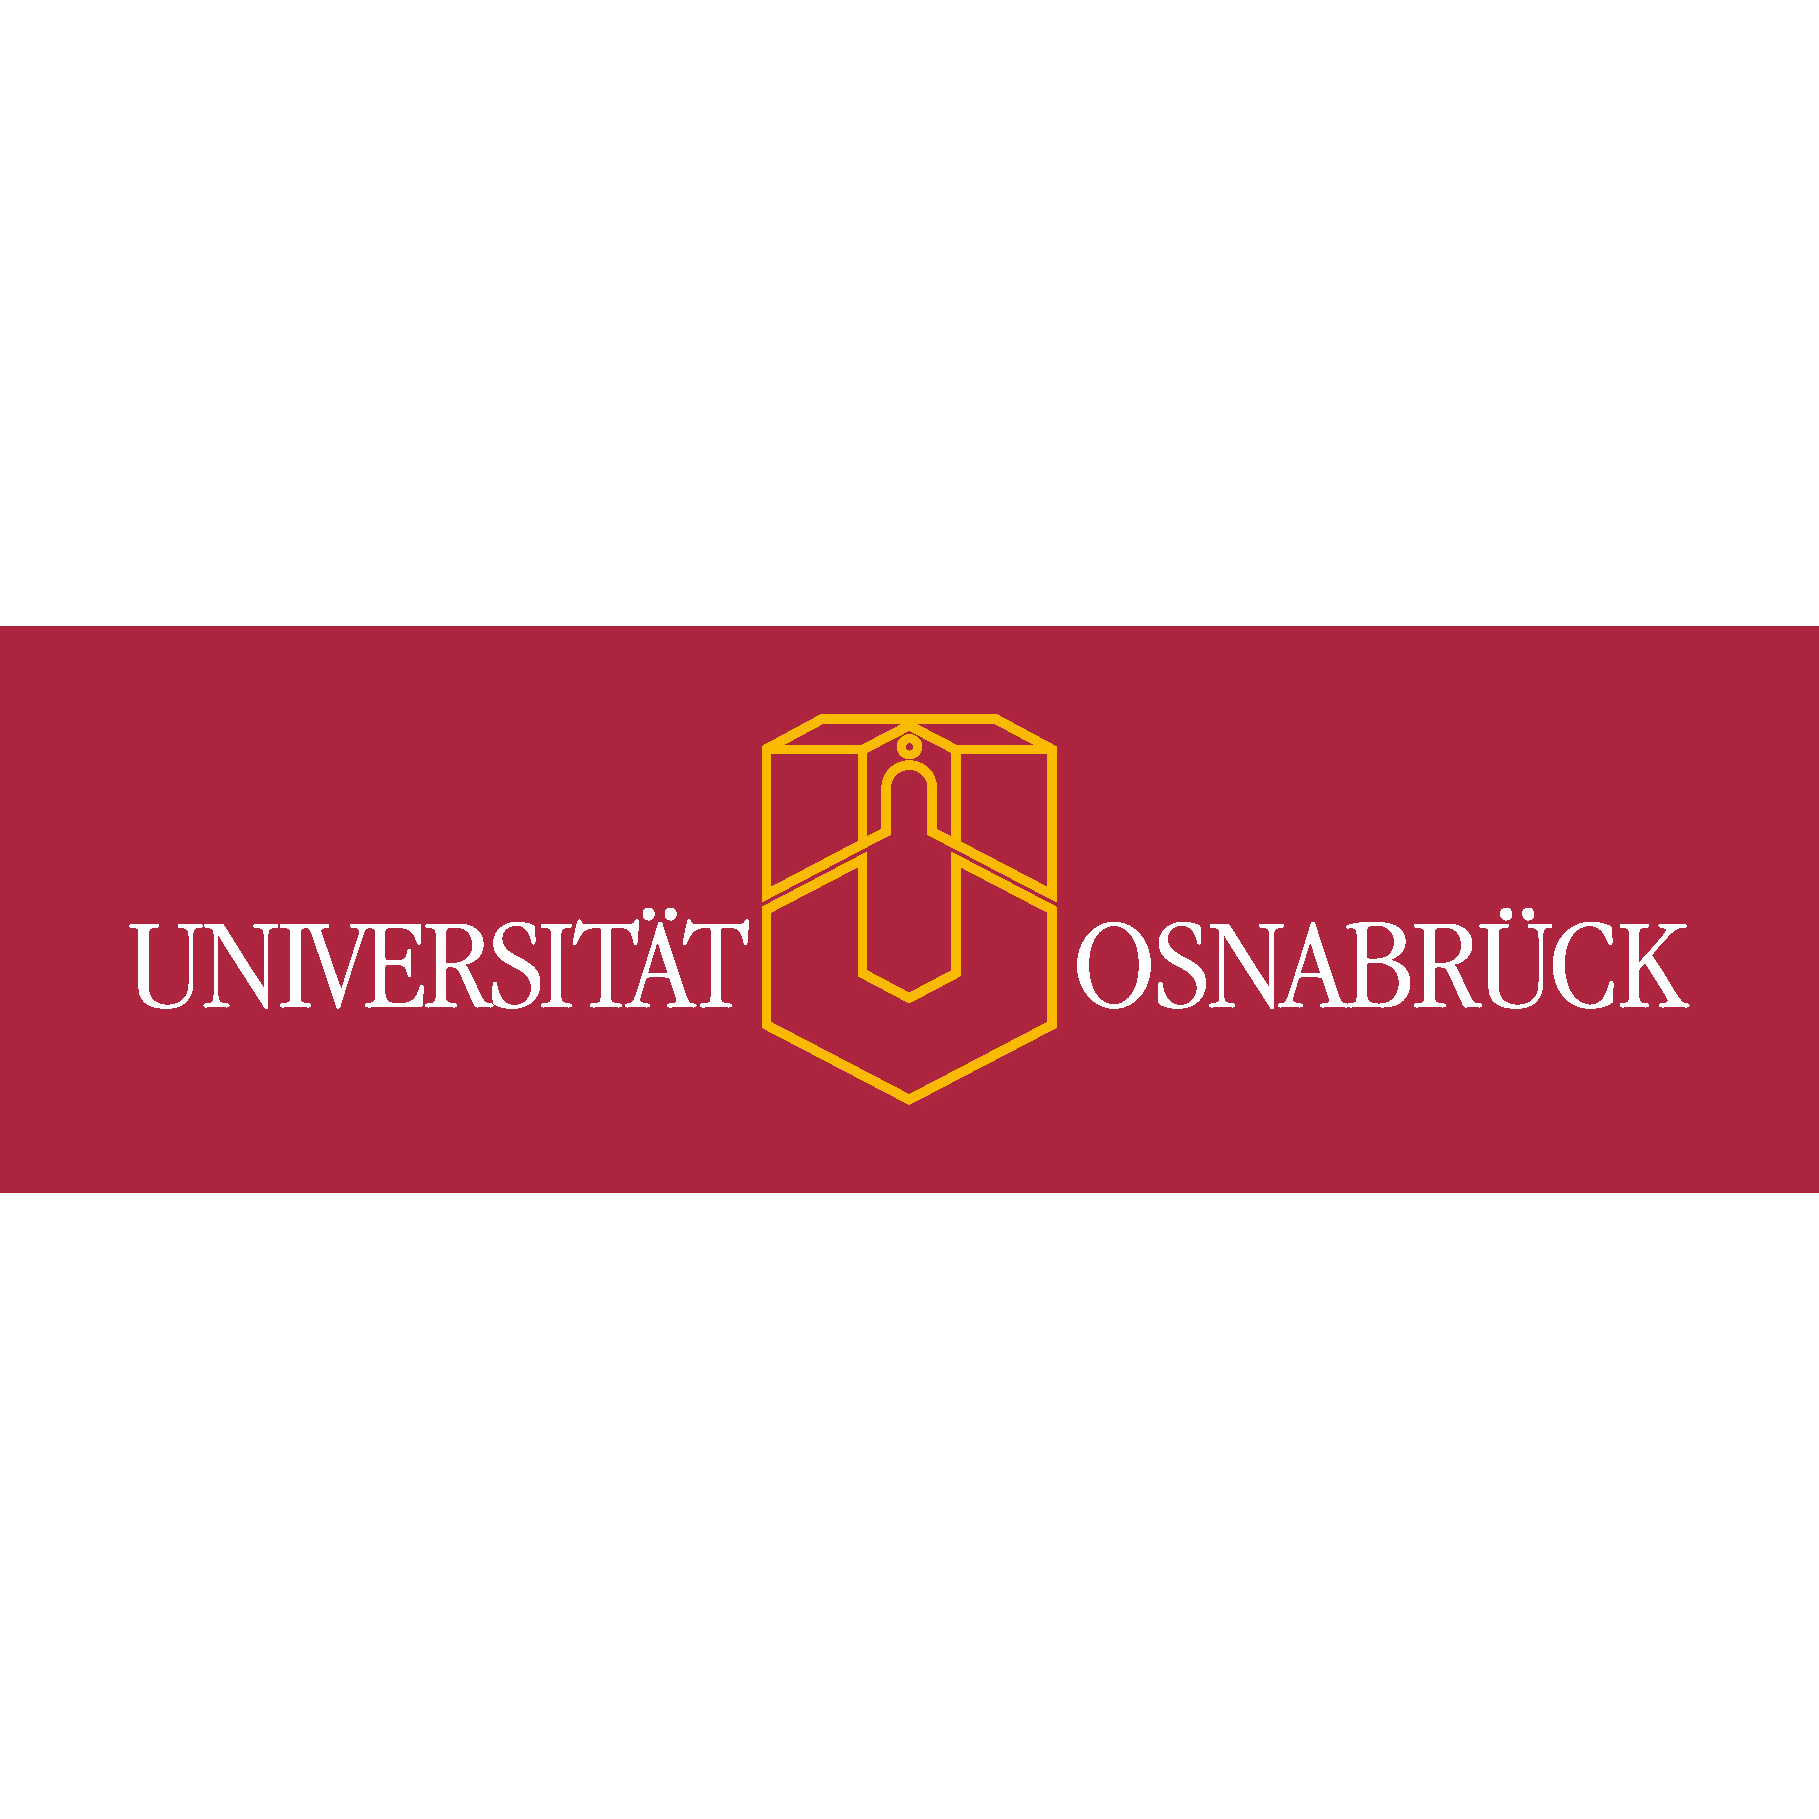 Biodiversität in der Landwirtschaft verbessern: Uni Osnabrück beteiligt sich an großangelegtem EU-Projekt